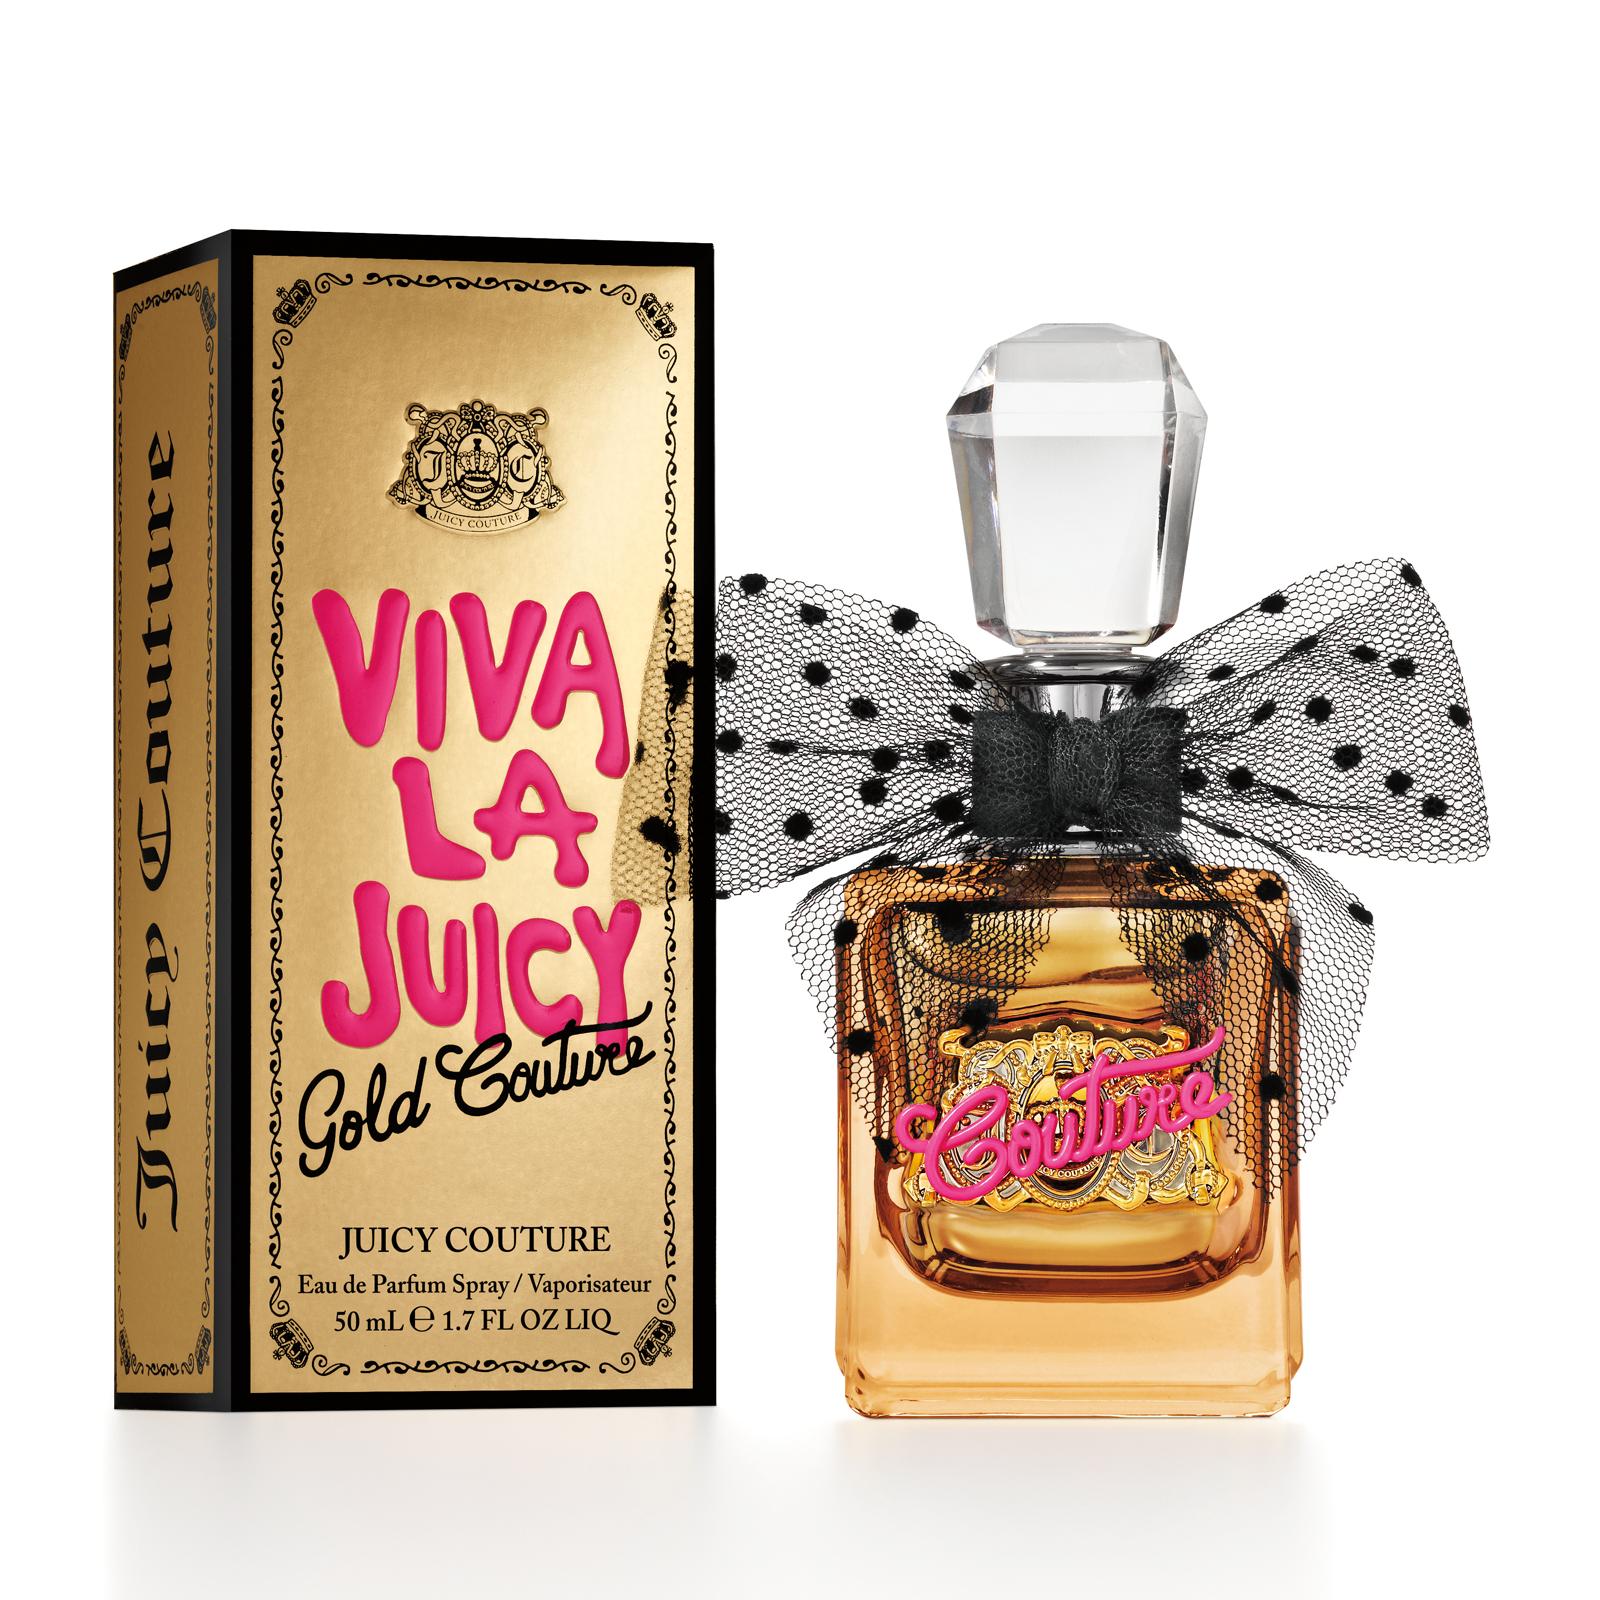 Juicy Couture Viva La Juicy Gold Couture Eau de Parfum 50ml - Feelunique